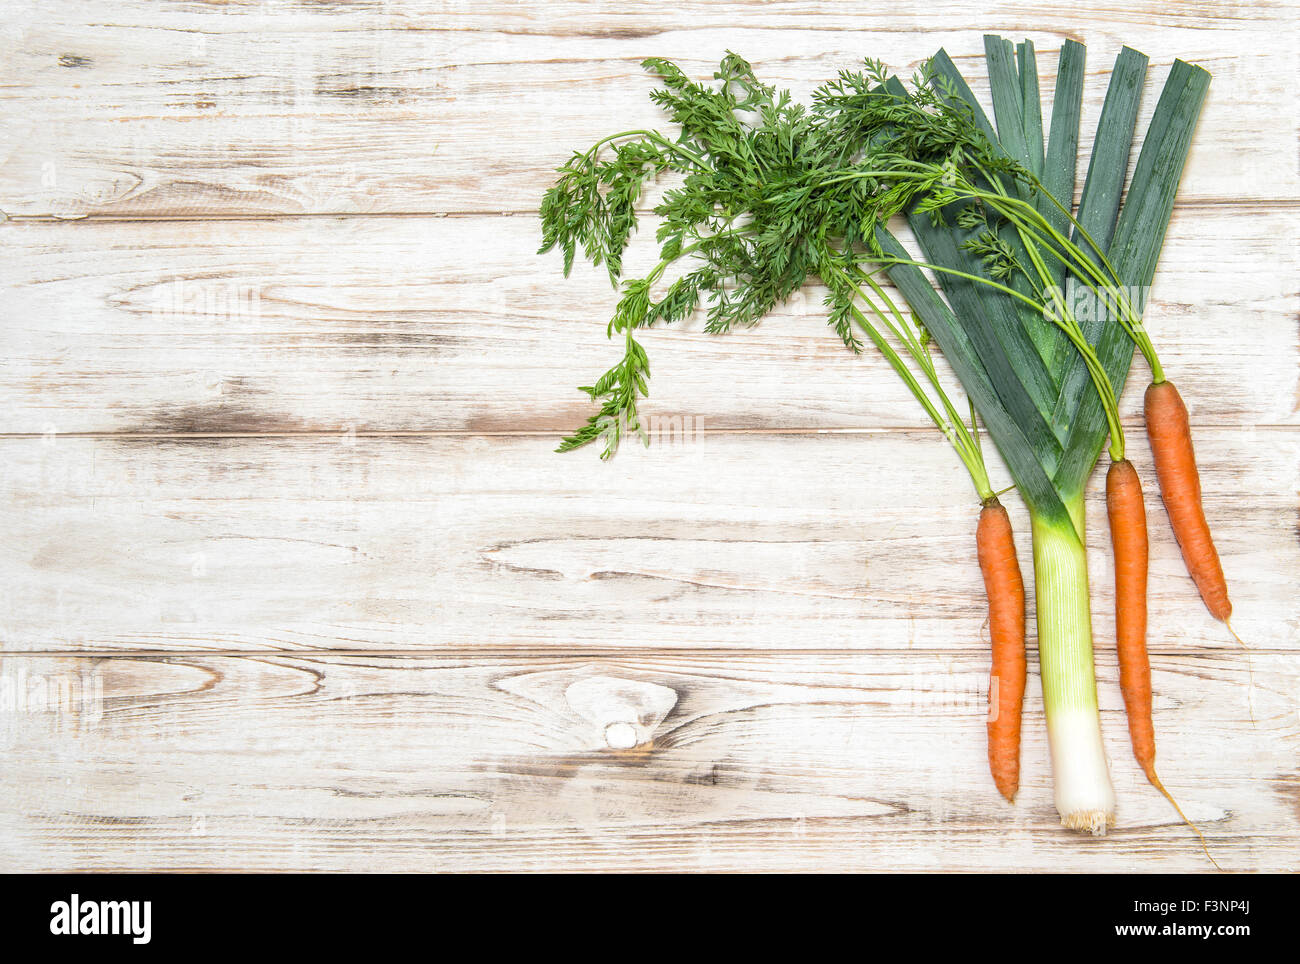 Les légumes frais biologiques. Le poireau et les carottes sur fond de bois. Ingrédients alimentaires sains Banque D'Images